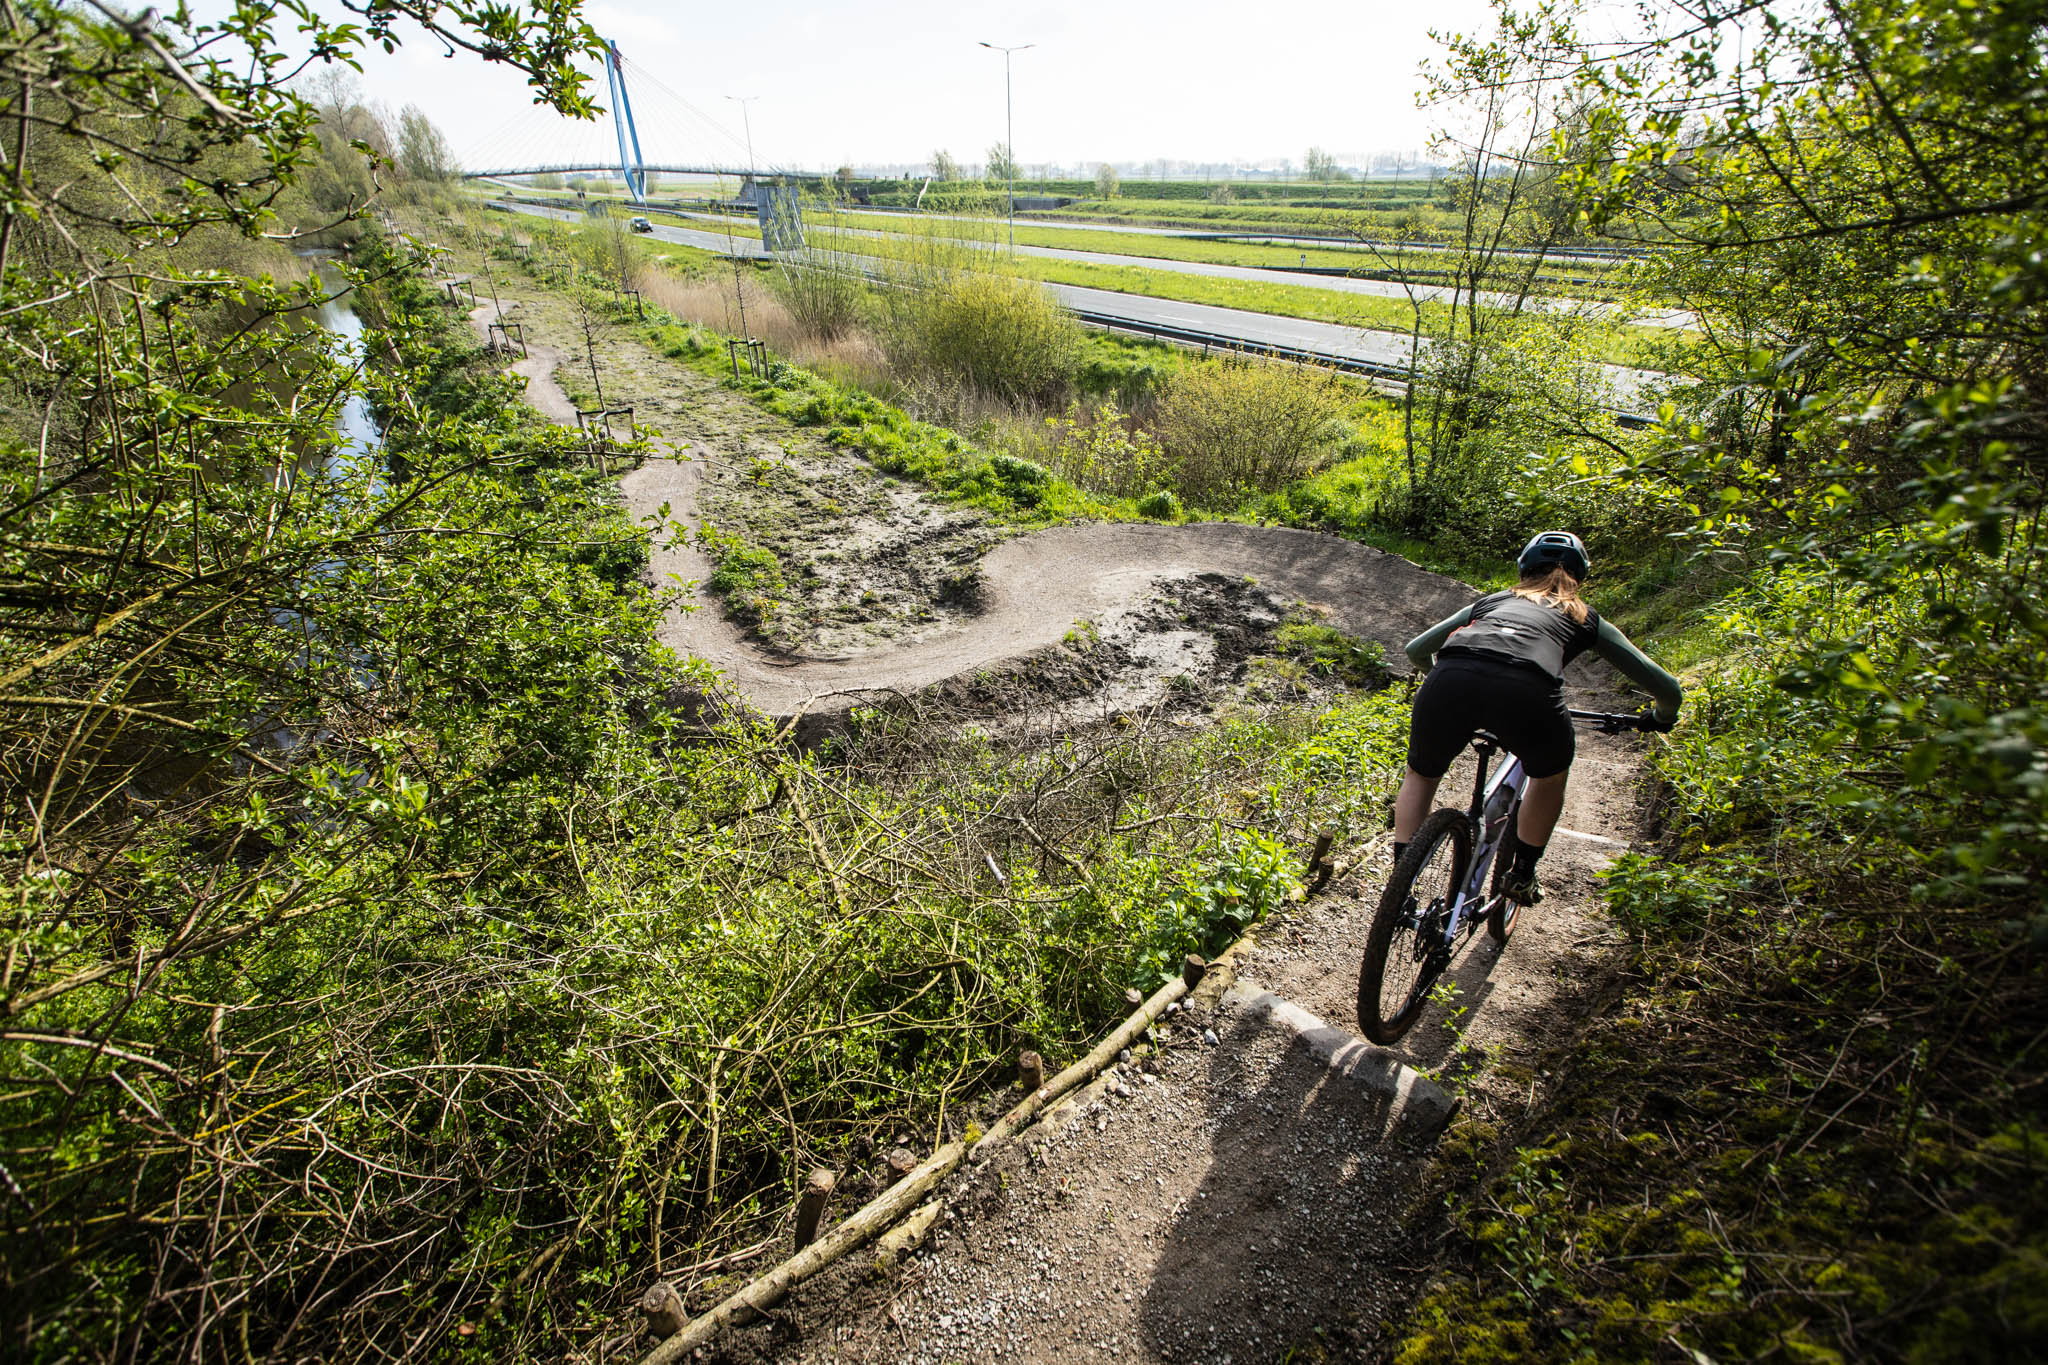 Ontdekking | We nemen je mee naar de nieuwe mountainbikeroute in Hoofddorp ”powered by Schwalbe”